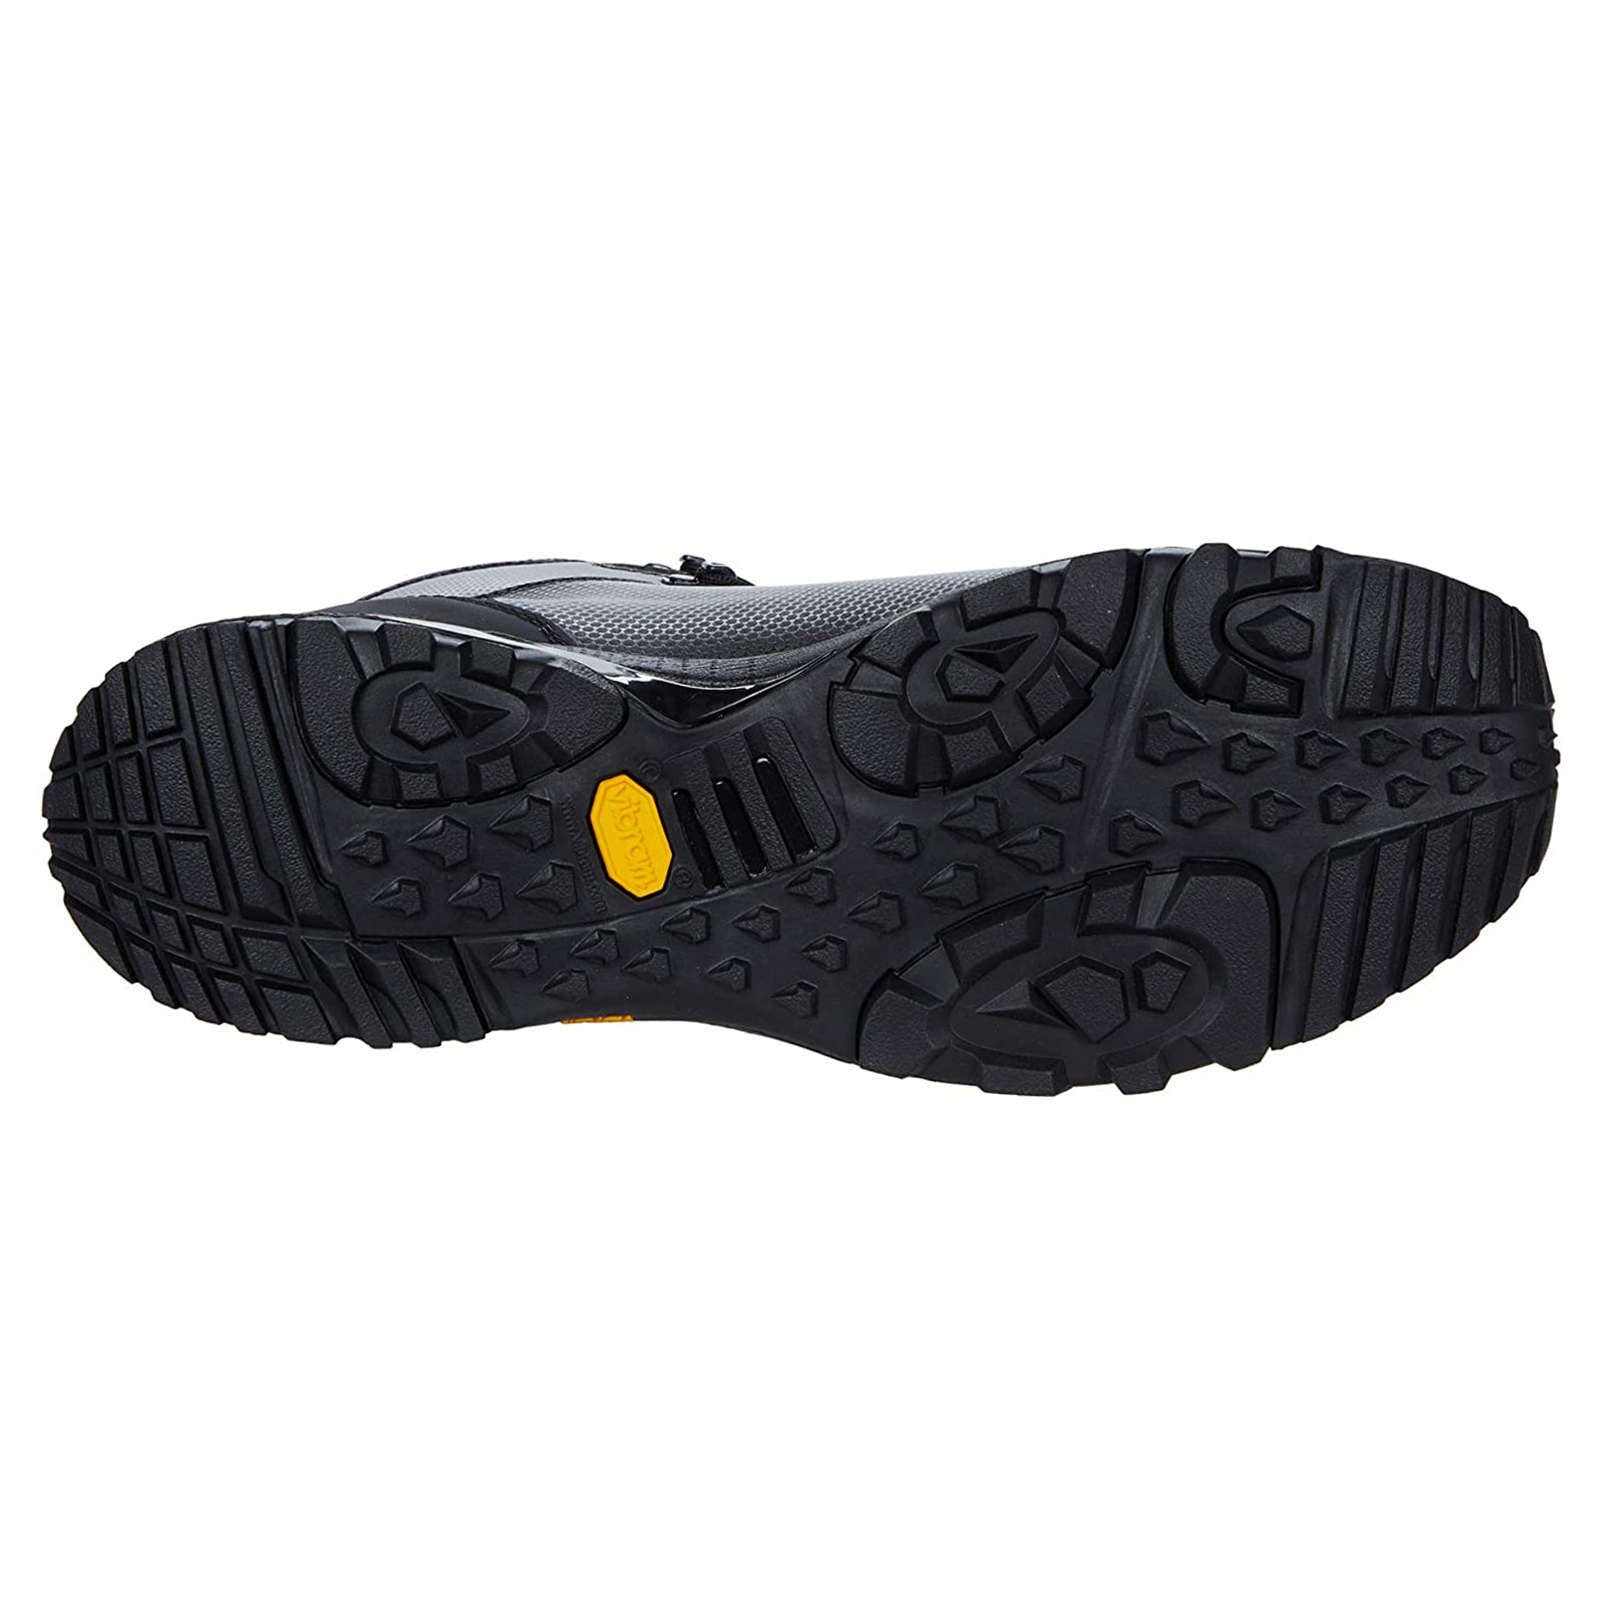 Zamberlan 2095 Brenva Lite GTX CF Textile Men's Waterproof Trekking Boots#color_black